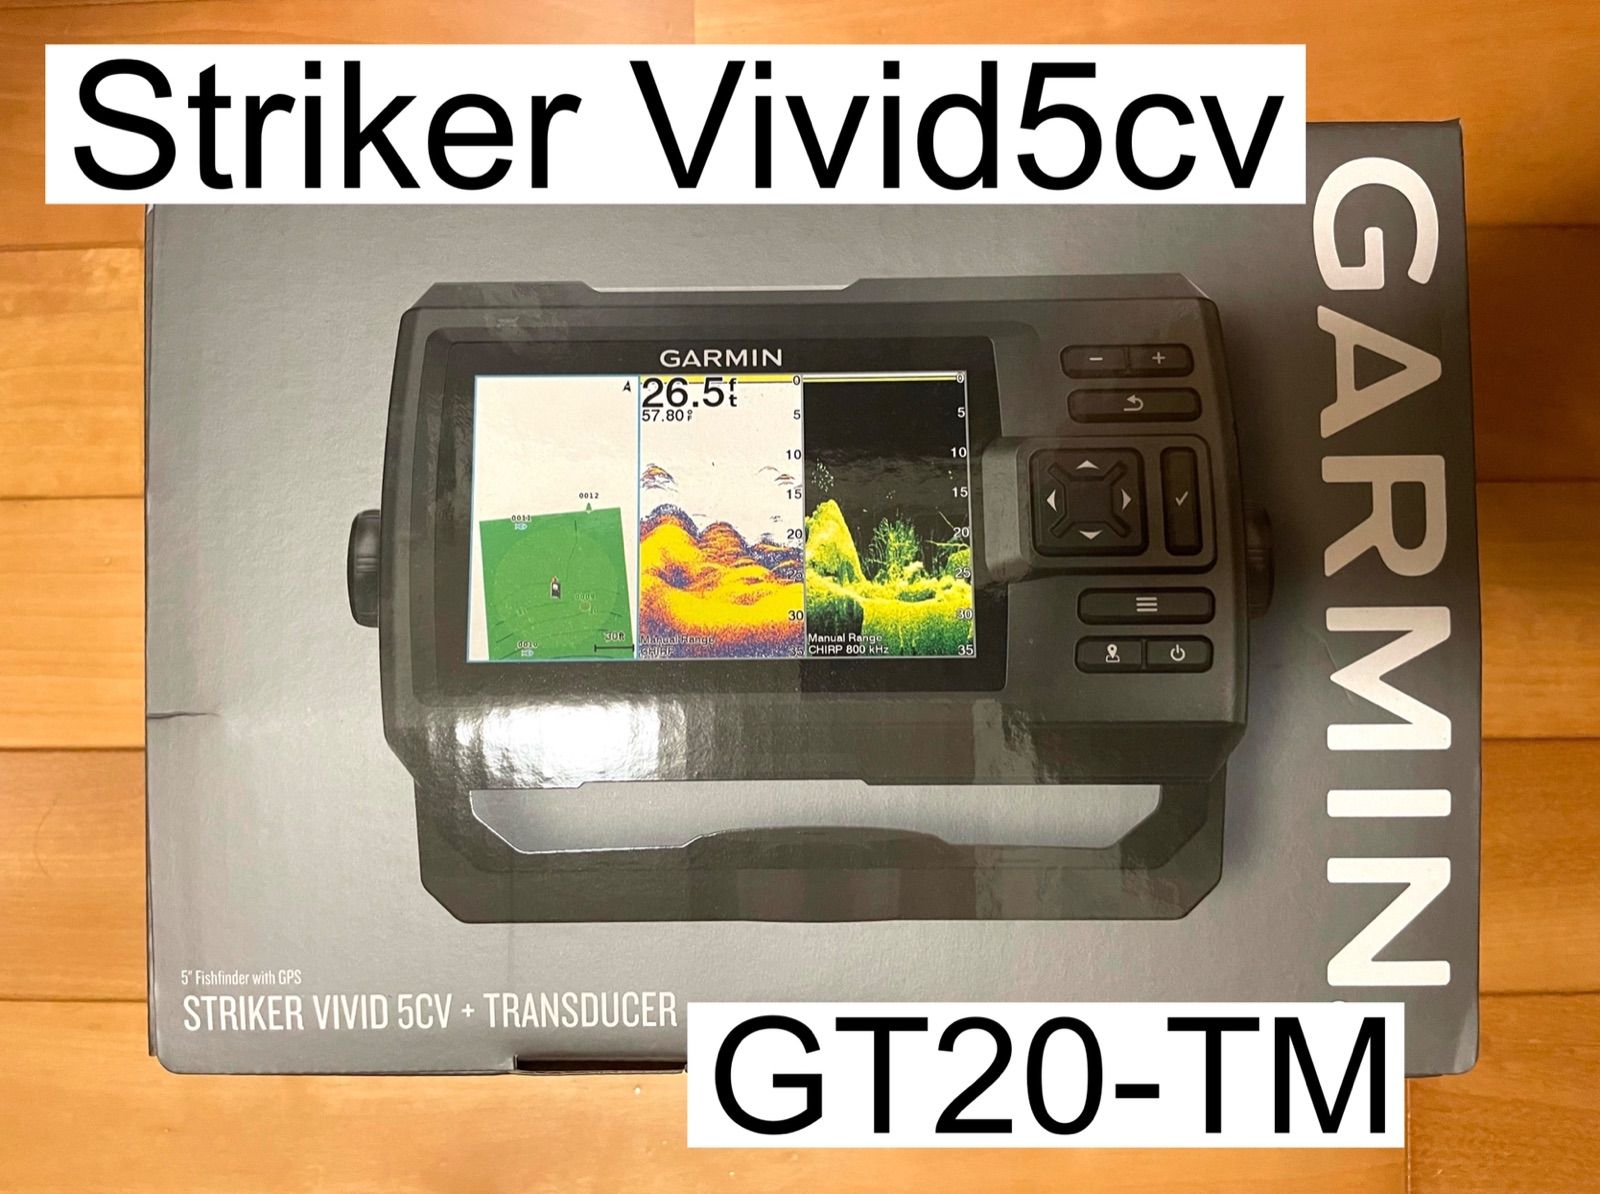 ガーミン ストライカービビッド5cv+GT20-TM振動子セット